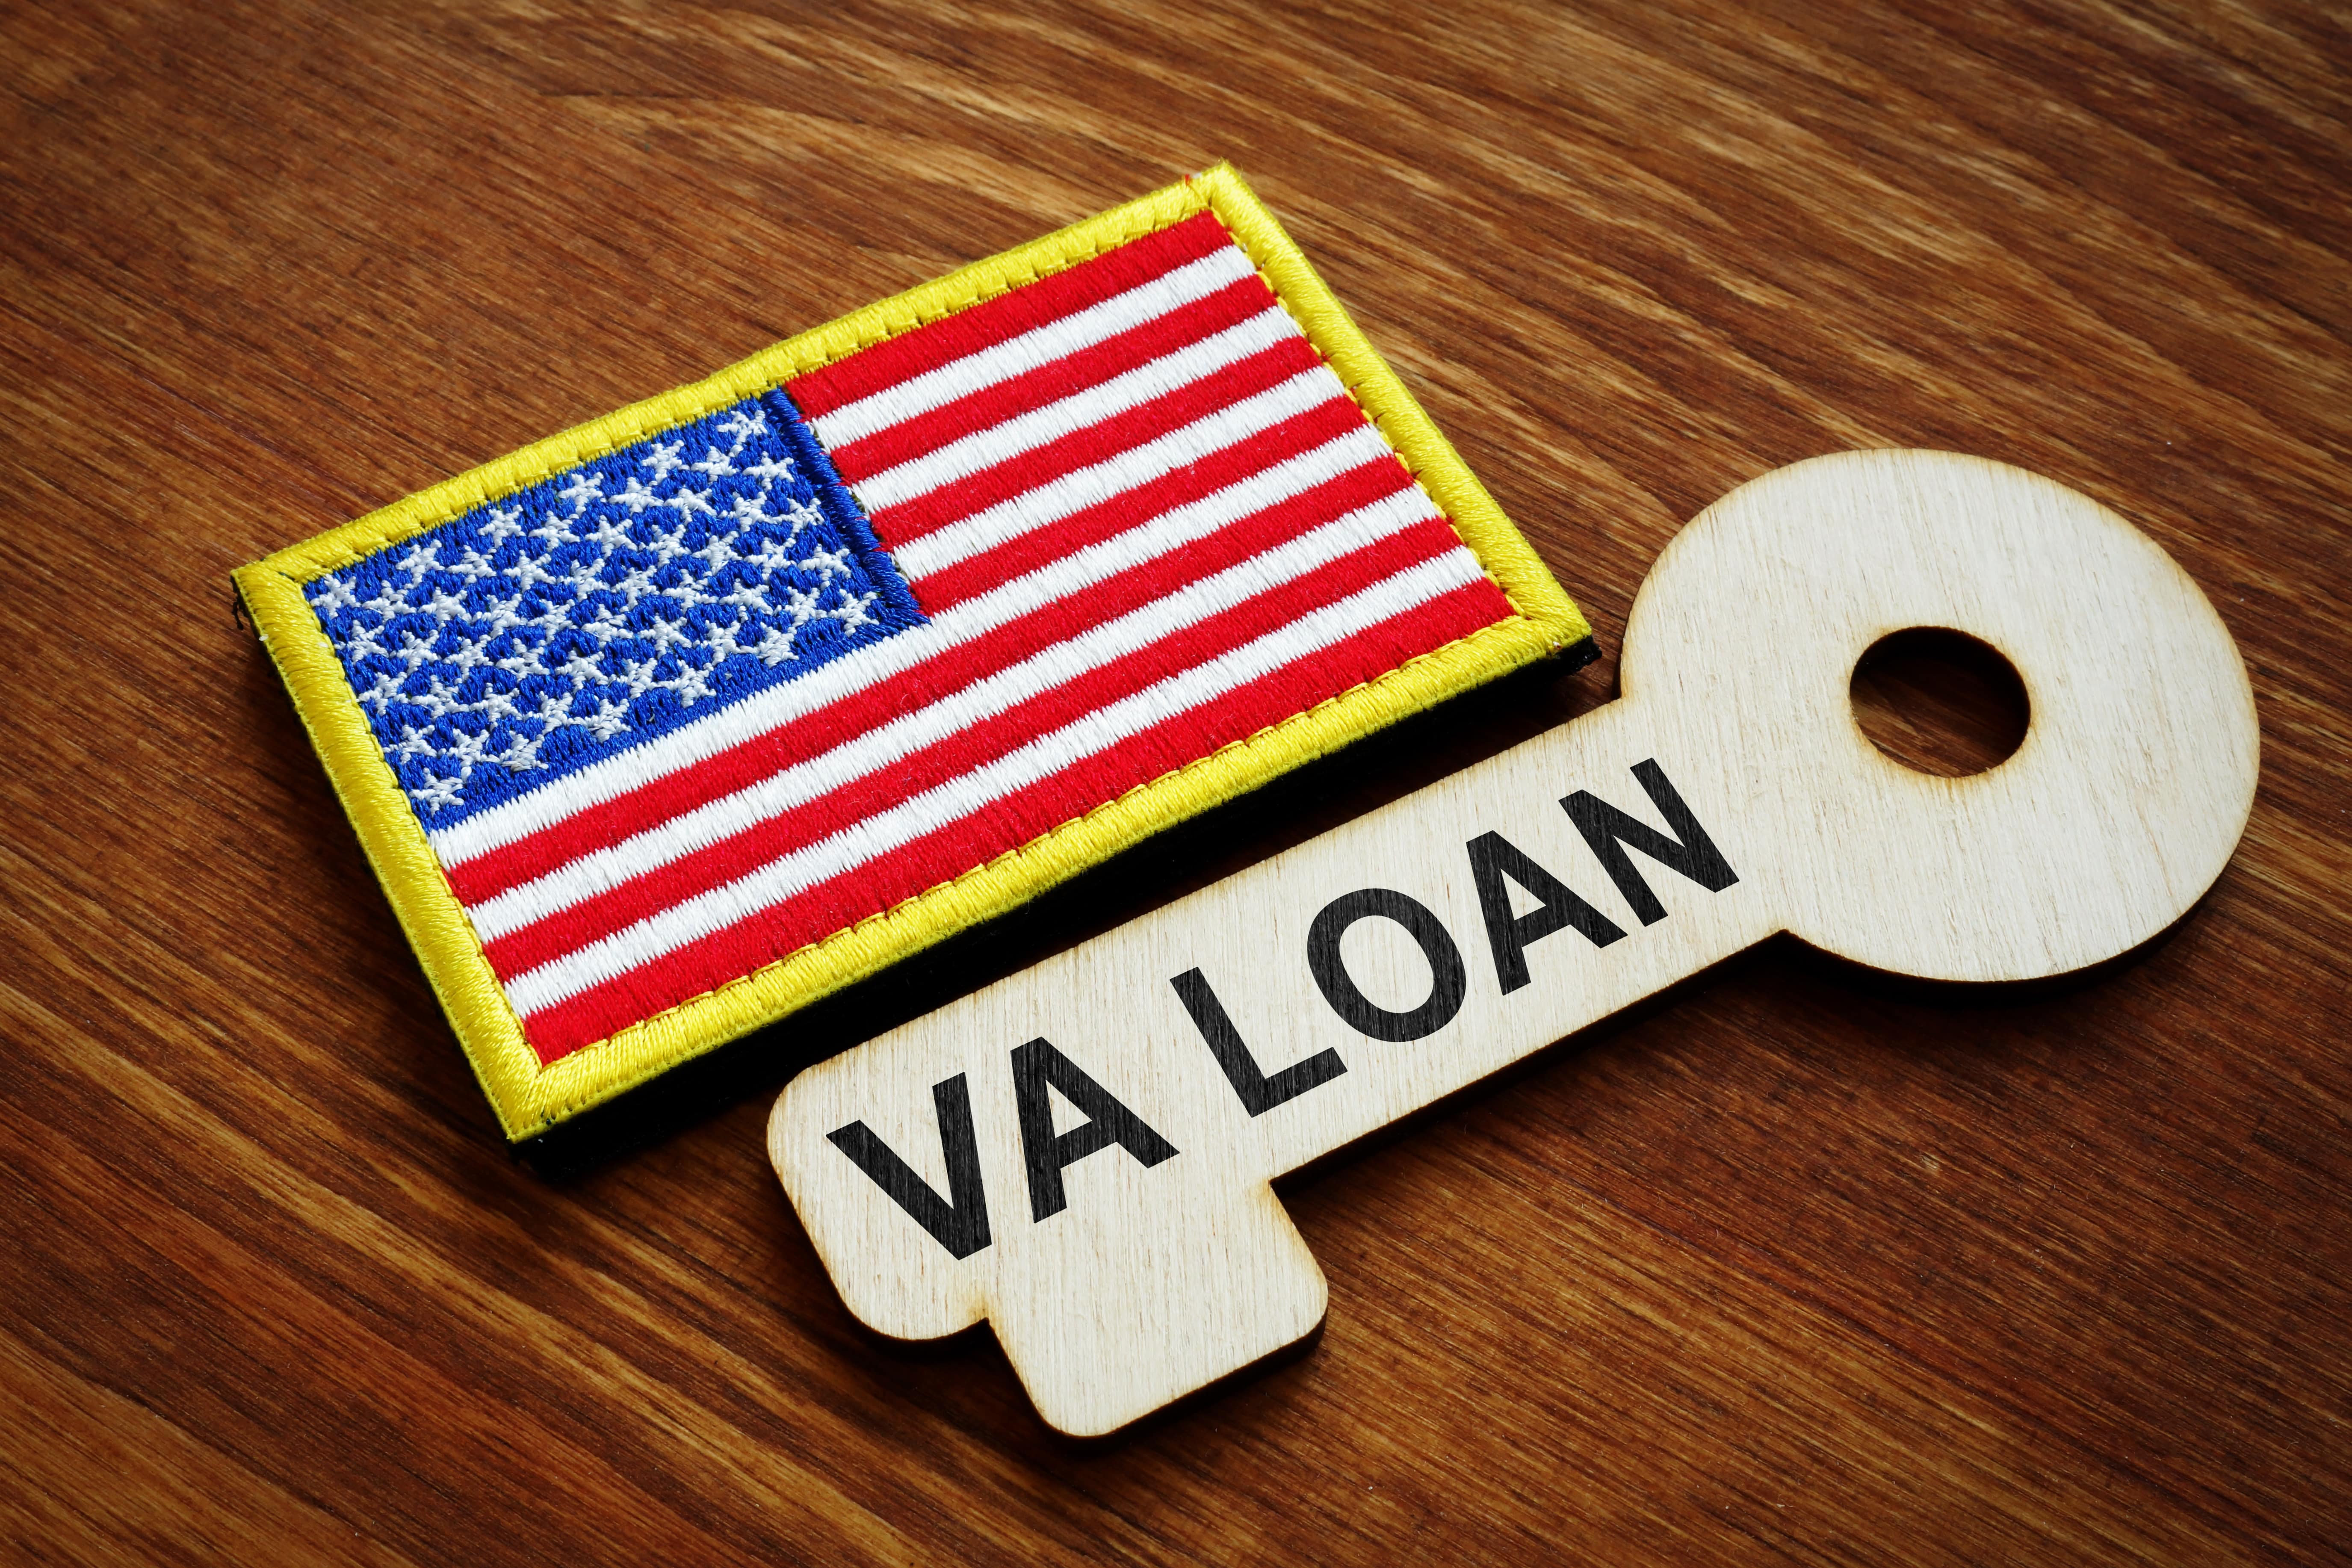 VA loan key image